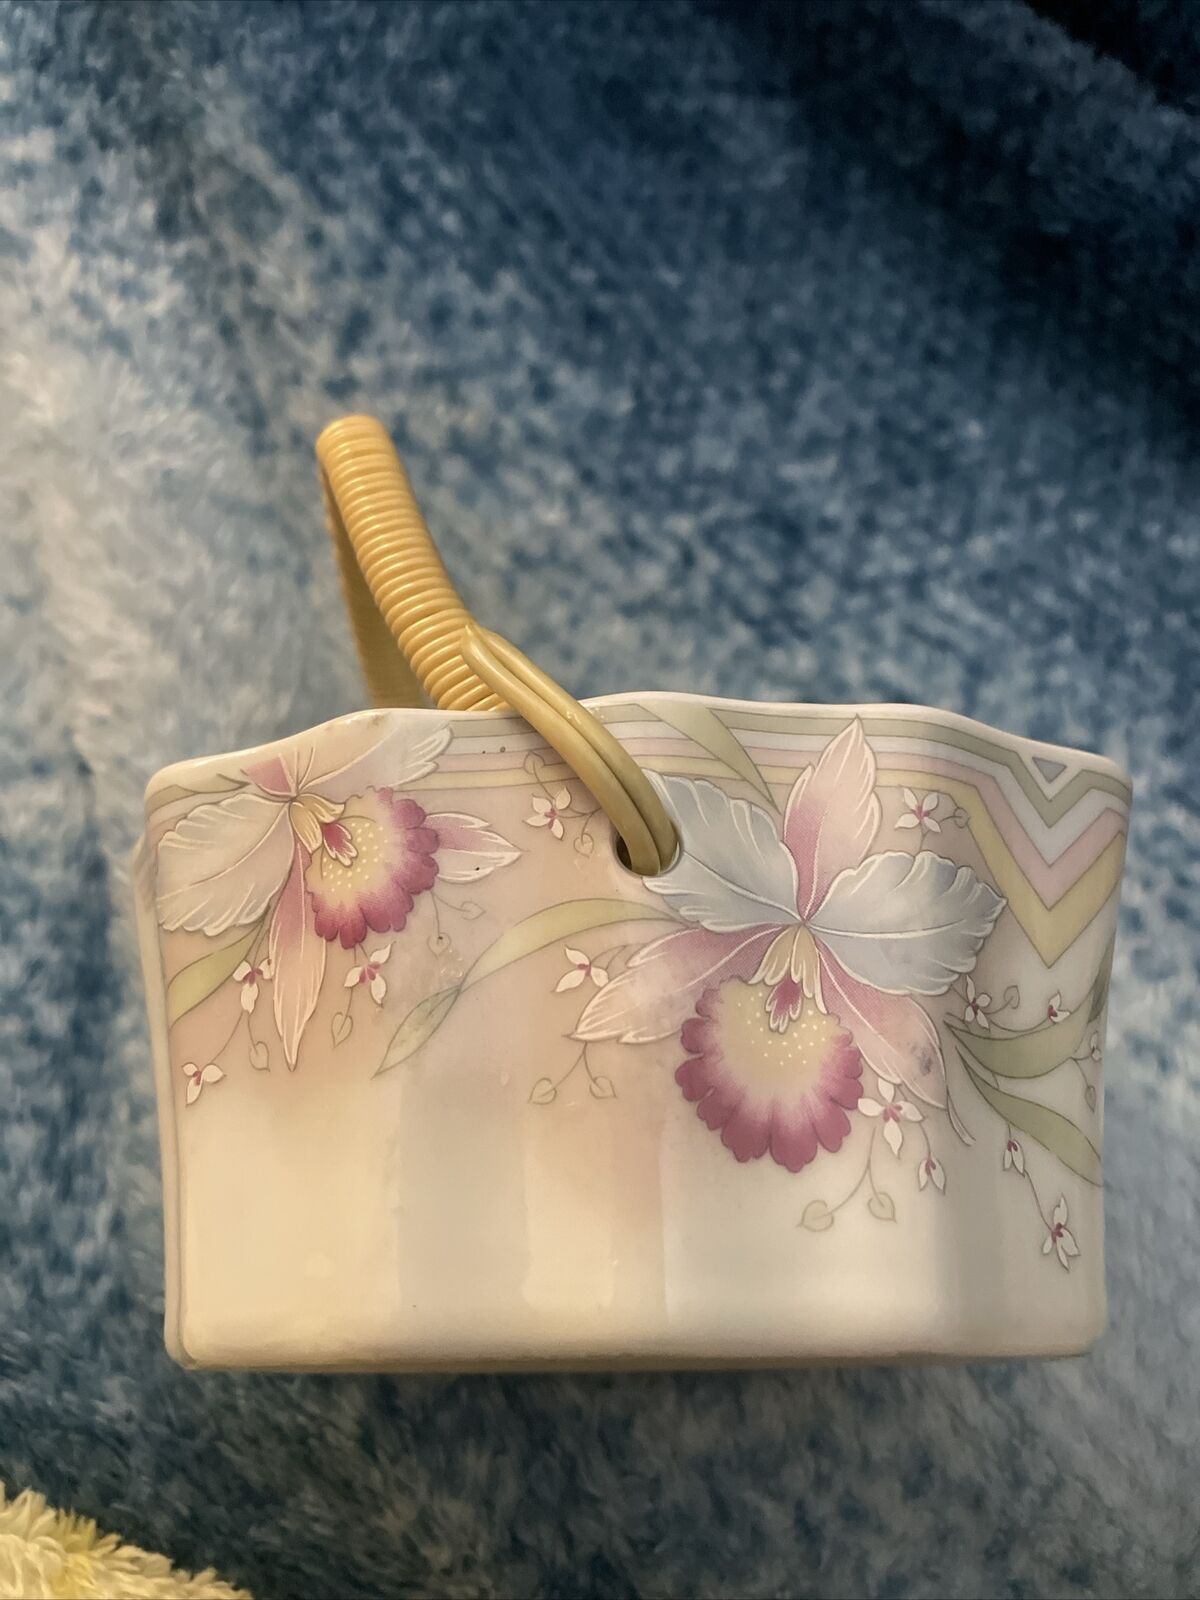 Vintage Russ Berrie Co. Floral Trinket/Basket with Handle -Porcelain Japan